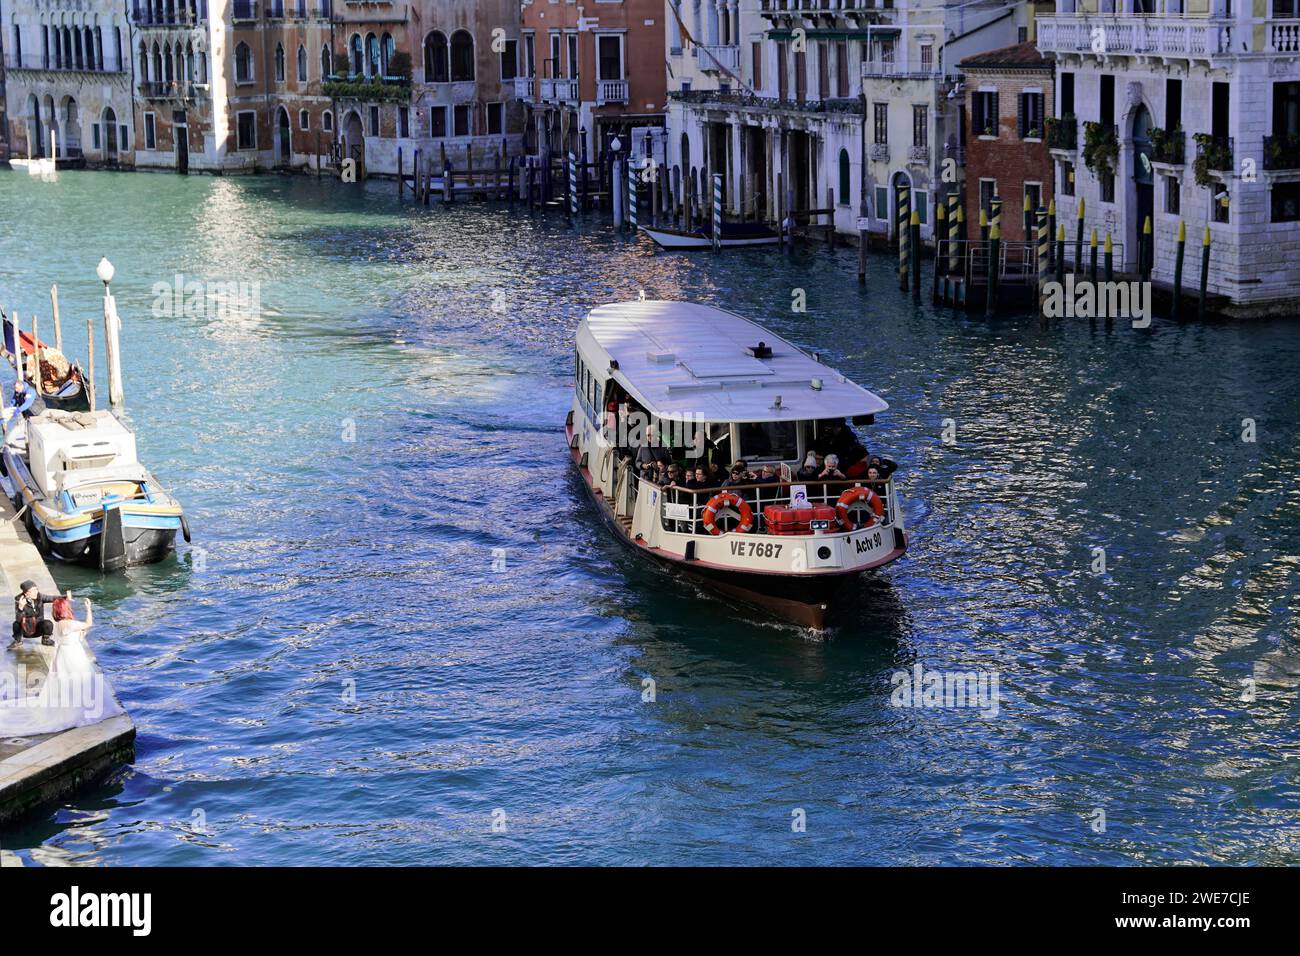 Vaporetti on the Grand Canal, Venice, Veneto, Italy Stock Photo